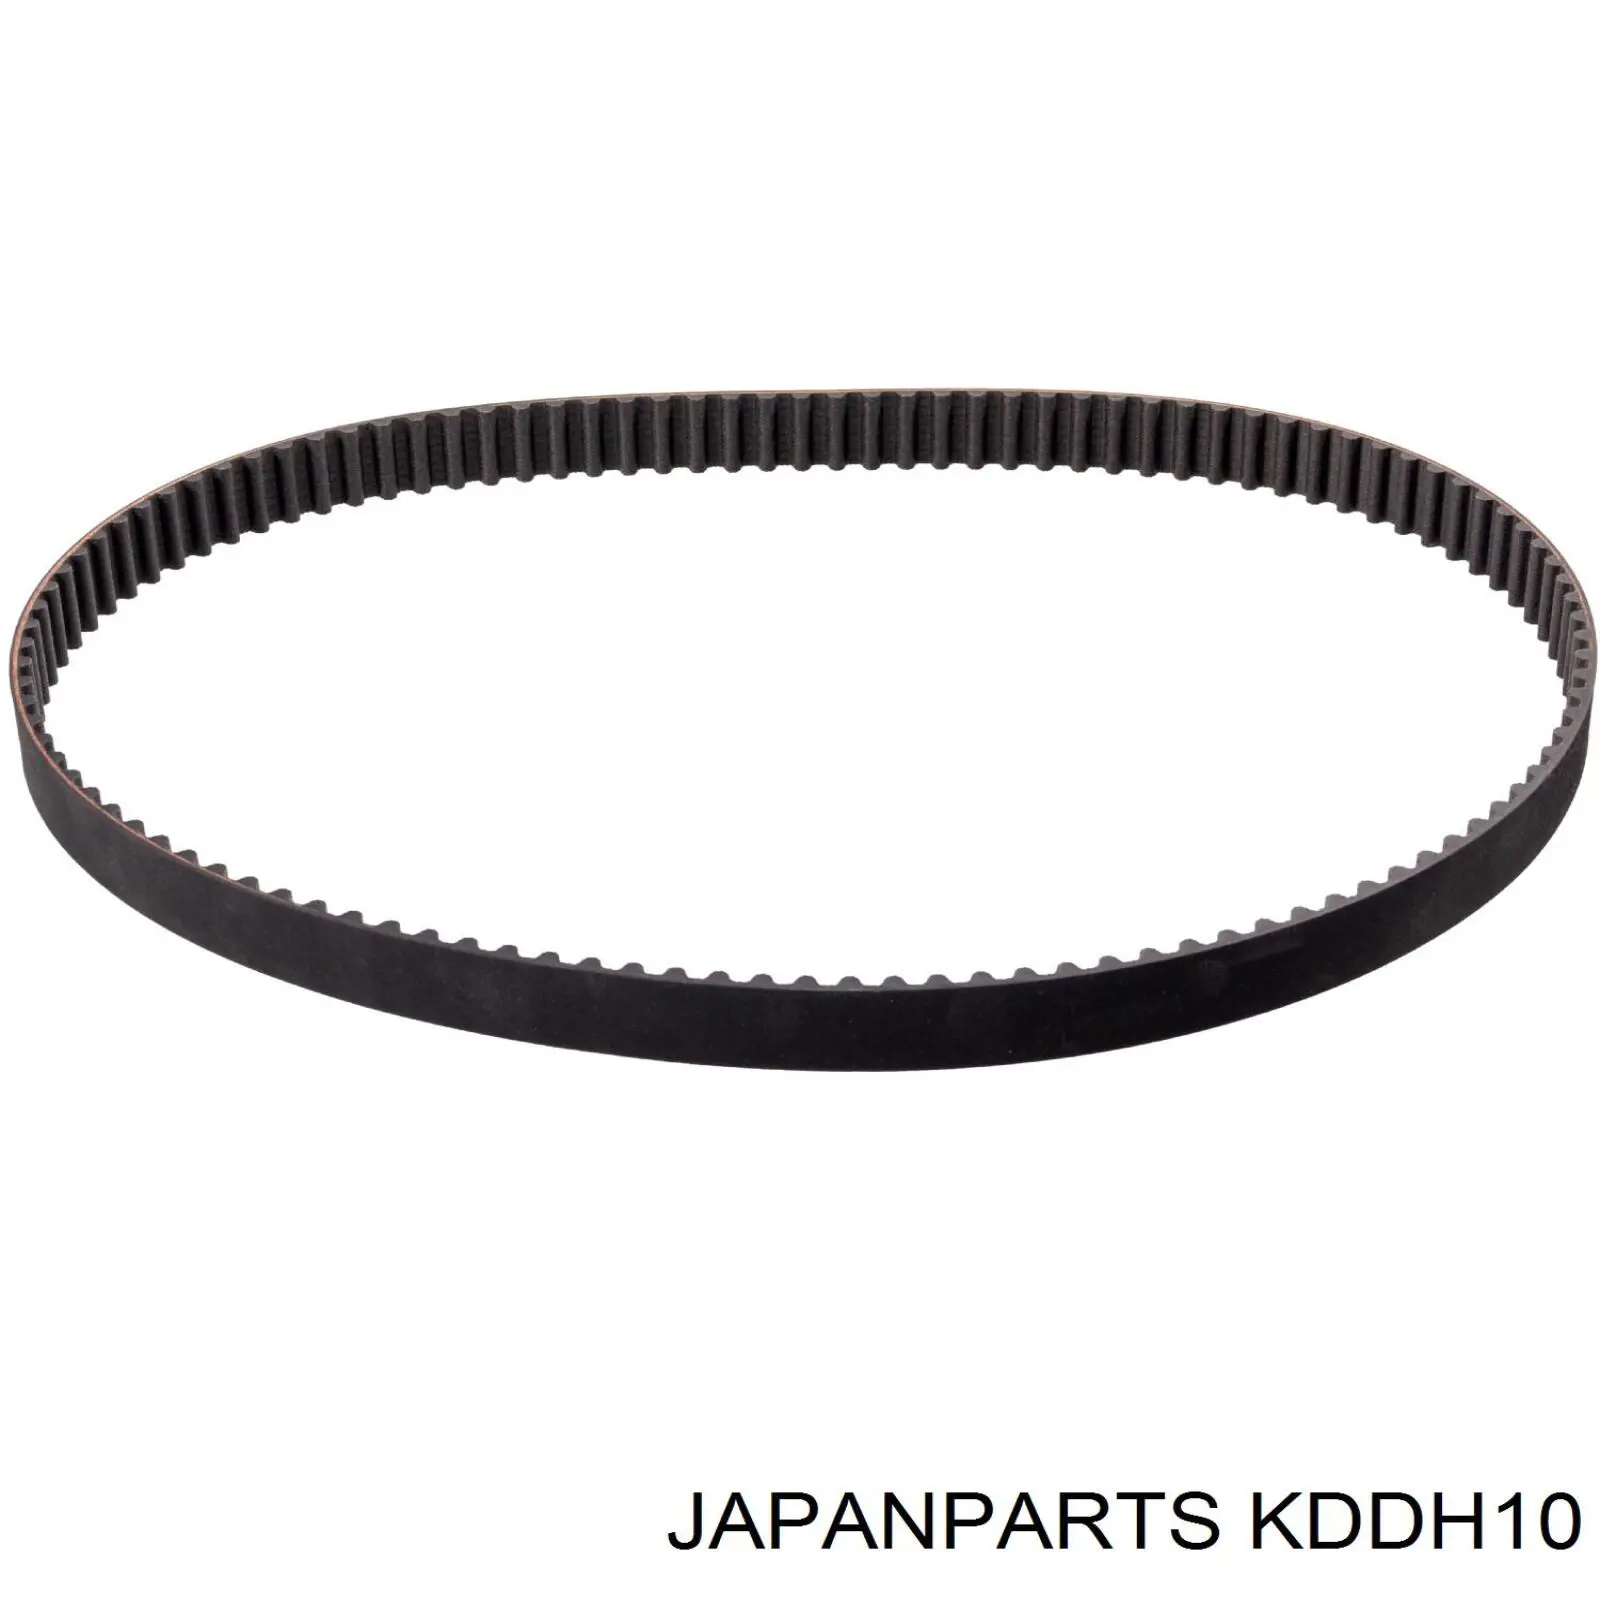 KDD-H10 Japan Parts kit de correa de distribución